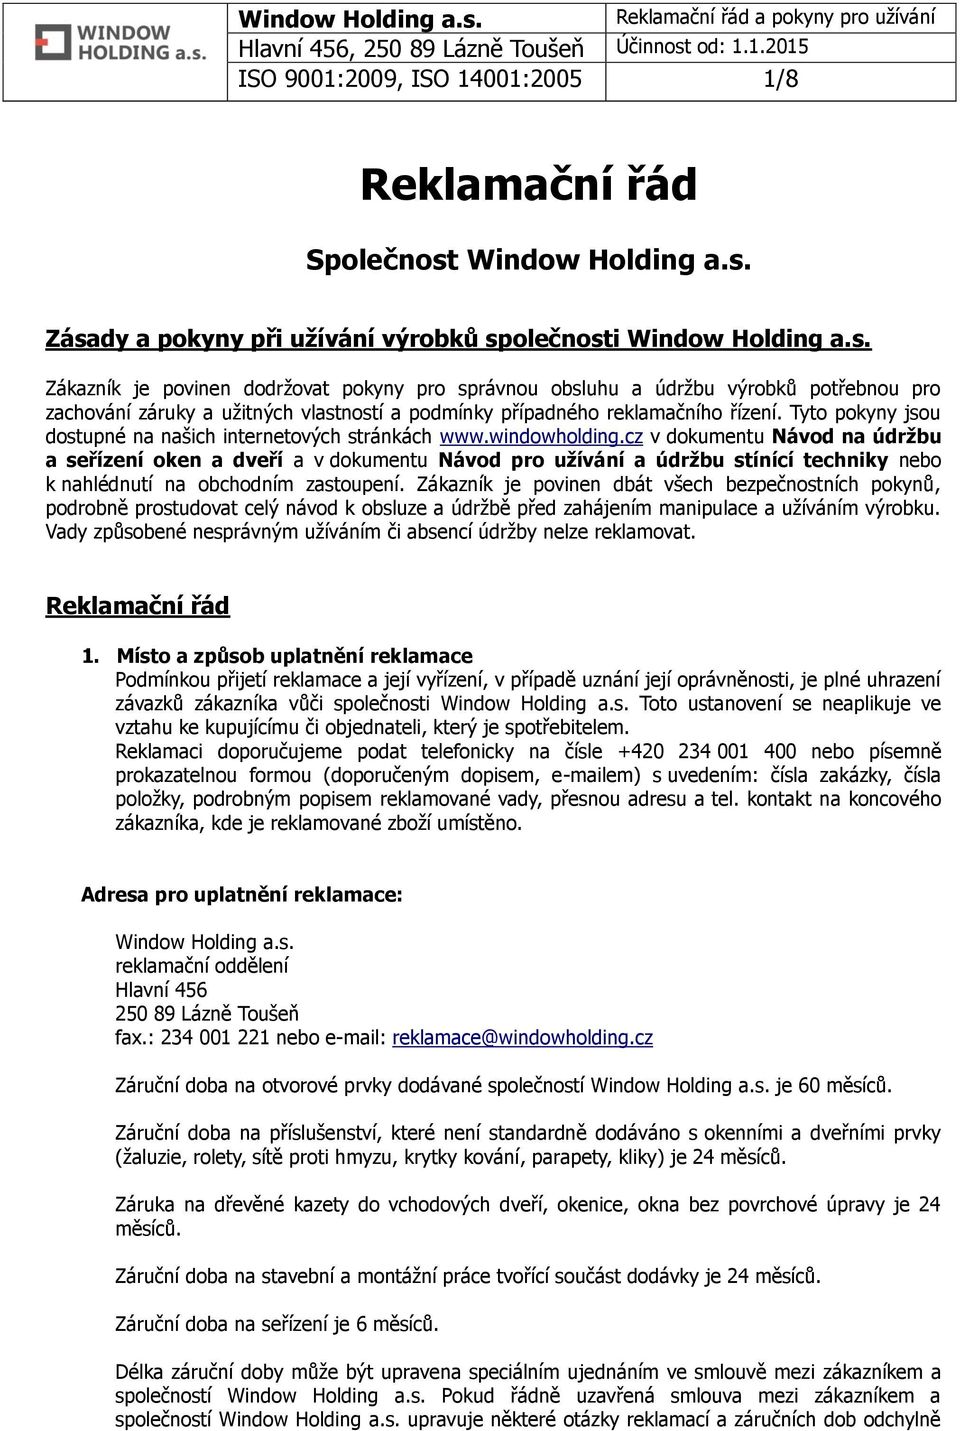 Tyto pokyny jsou dostupné na našich internetových stránkách www.windowholding.